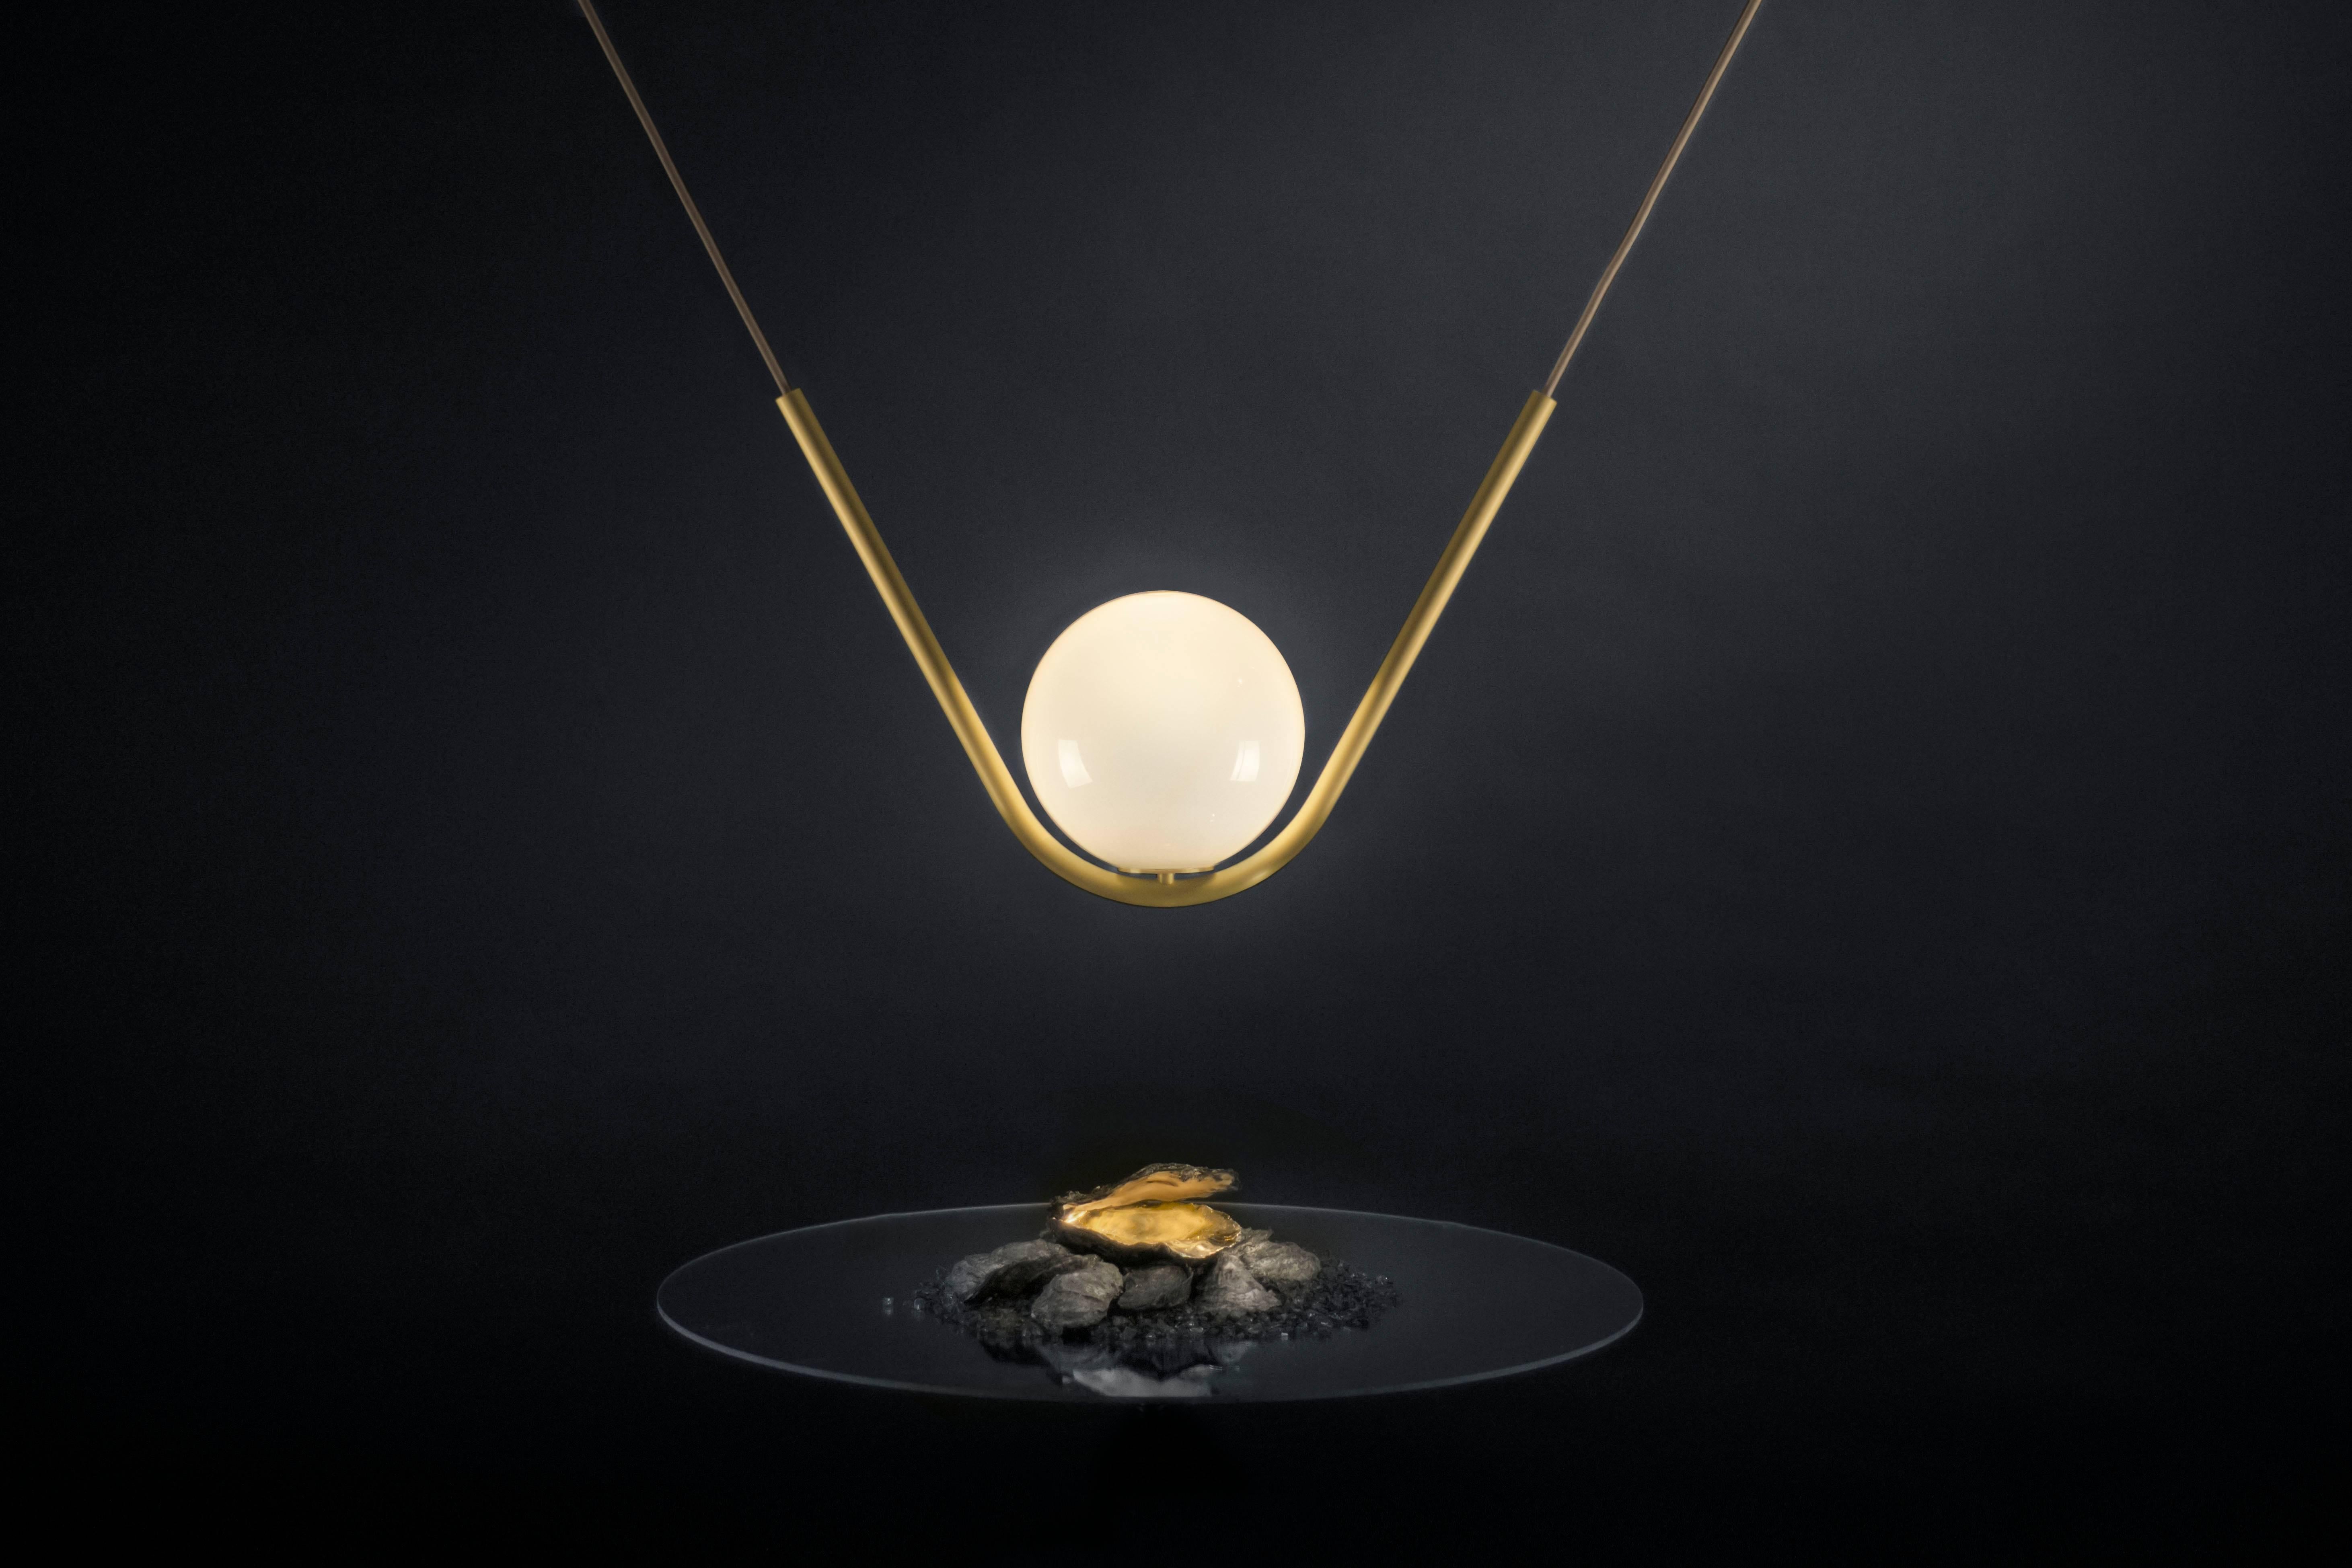 Perle 1 est un luxueux luminaire haut de gamme qui a été revêtu de chaleur et d'élégance. Inspirée par le monde romantique des bijoux, la collection Perle est fabriquée à la main avec une structure métallique délicate et une boule de verre soufflée